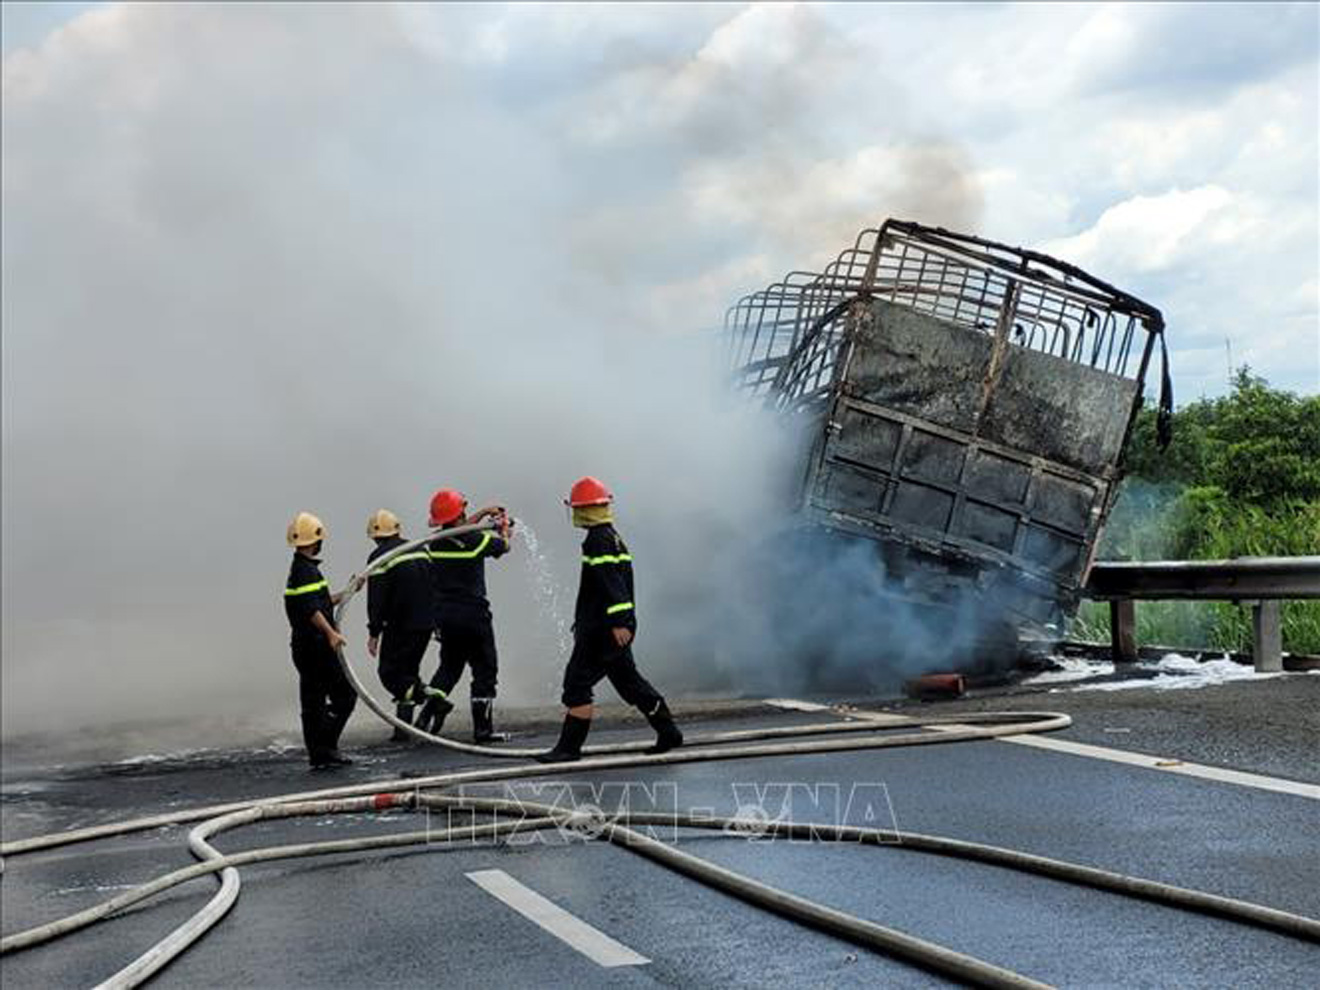 Cháy xe chở dầu, Cháy xe chở dầu trên cao tốc, Cao tốc Trung Lương, Cháy, cao tốc Trung Lương cháy xe chở dầu, Long An cháy xe chở dầu, Cháy xe, xe chở dầu